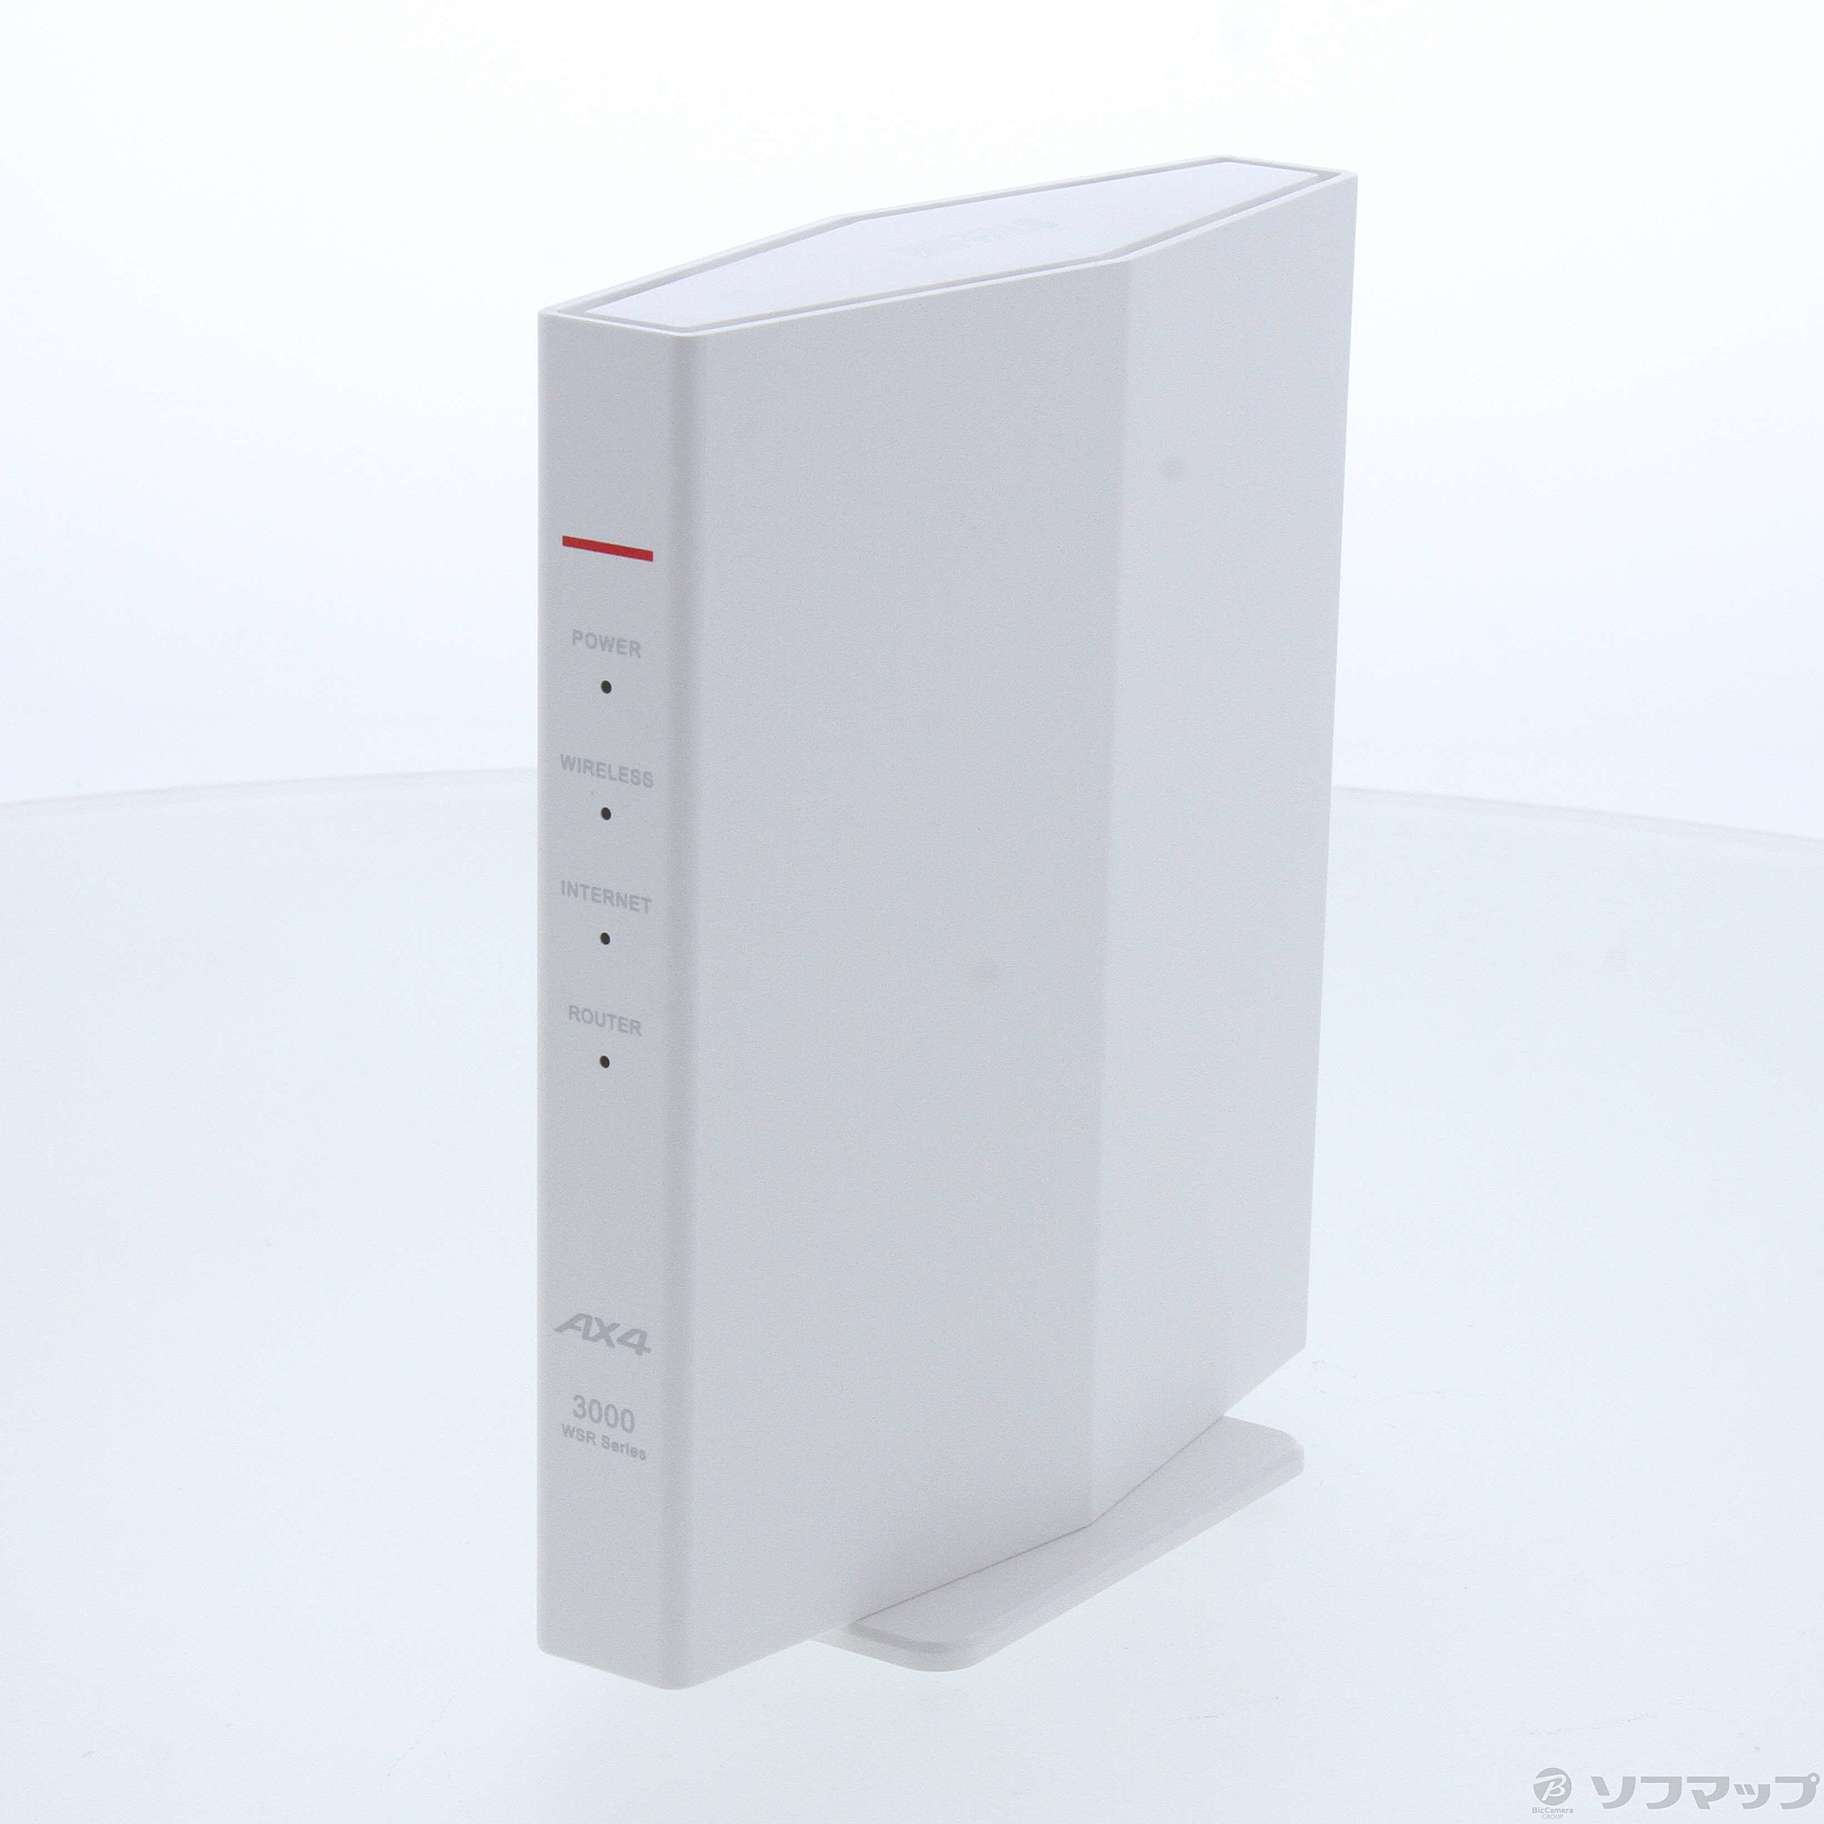 バッファロー(BUFFALO) WSR-3000AX4P-WH(ホワイト) AirStation Wi-Fi 6 対応ルーター スタンダードモデル